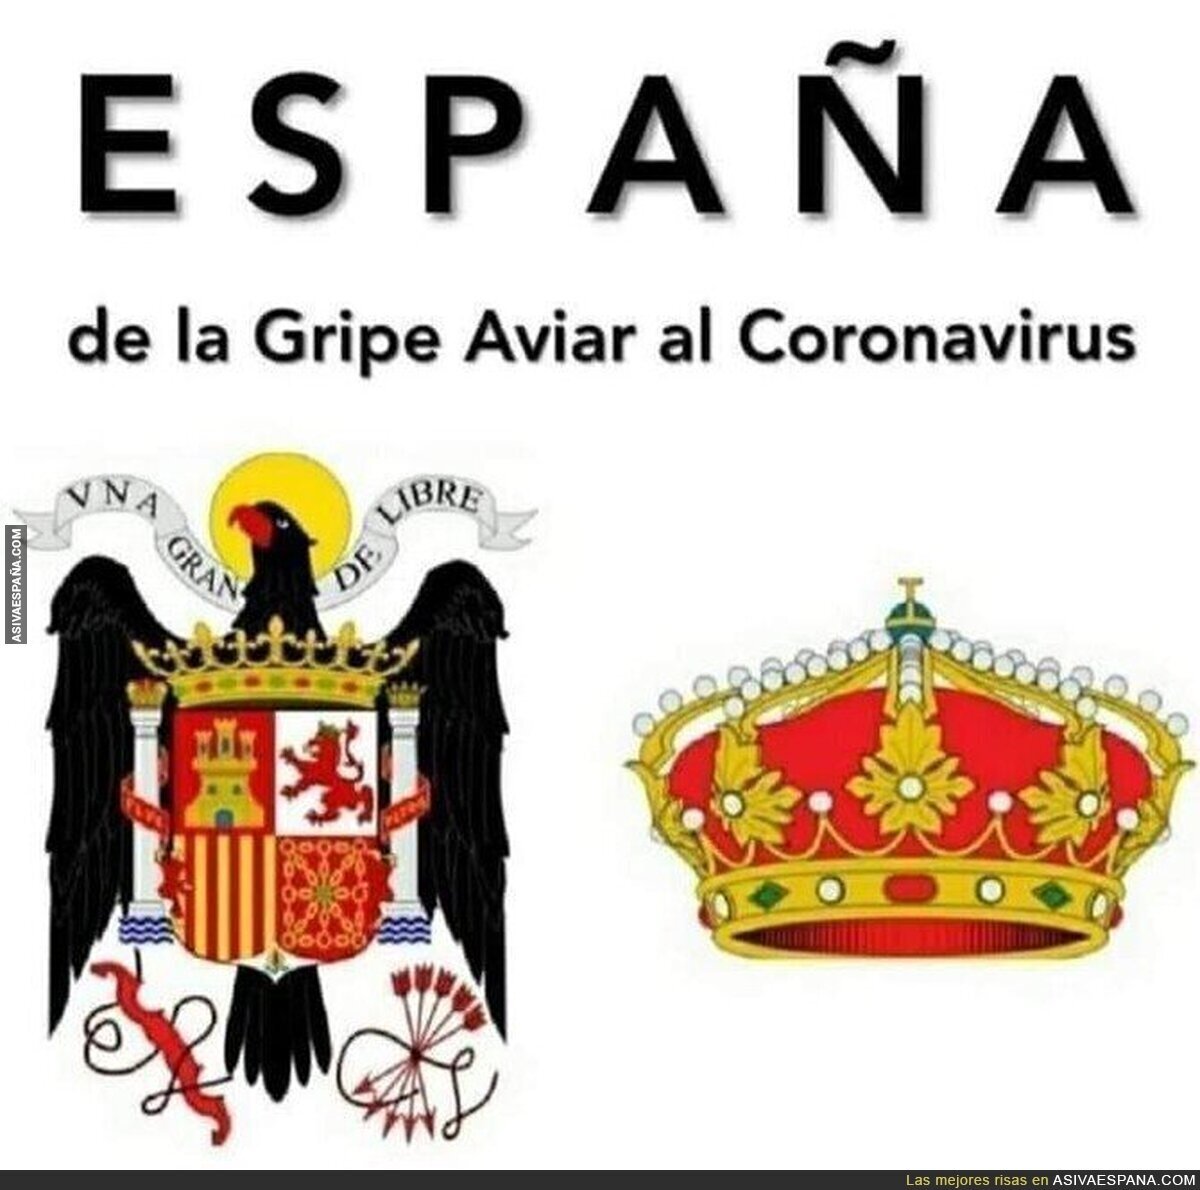 El gran virus que hay en España